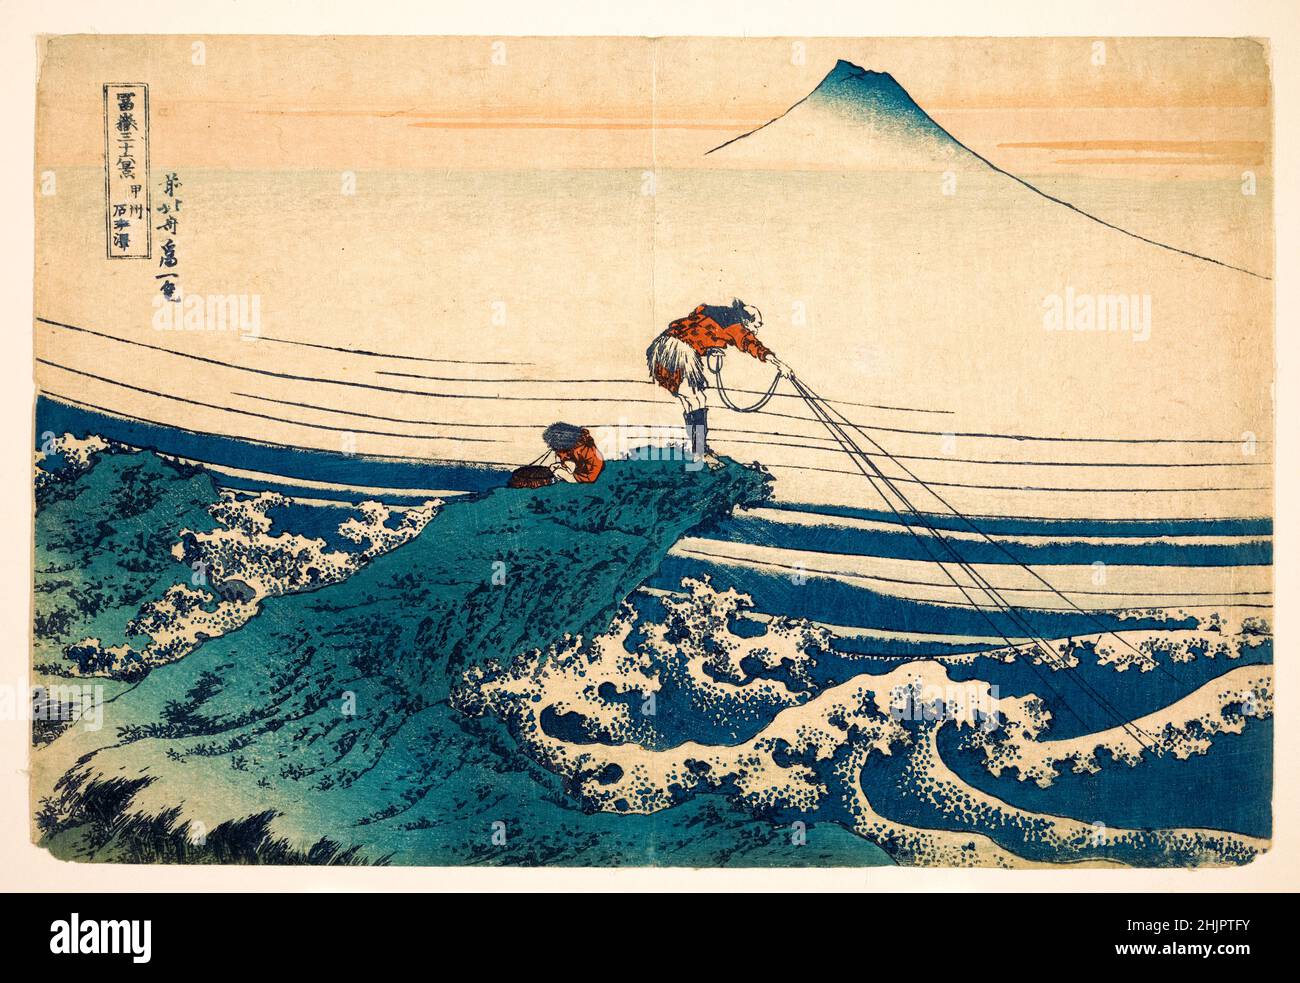 Kajikazawa in Kai Province, woodblock print by Katsushika Hokusai, 1830-1832 Stock Photo